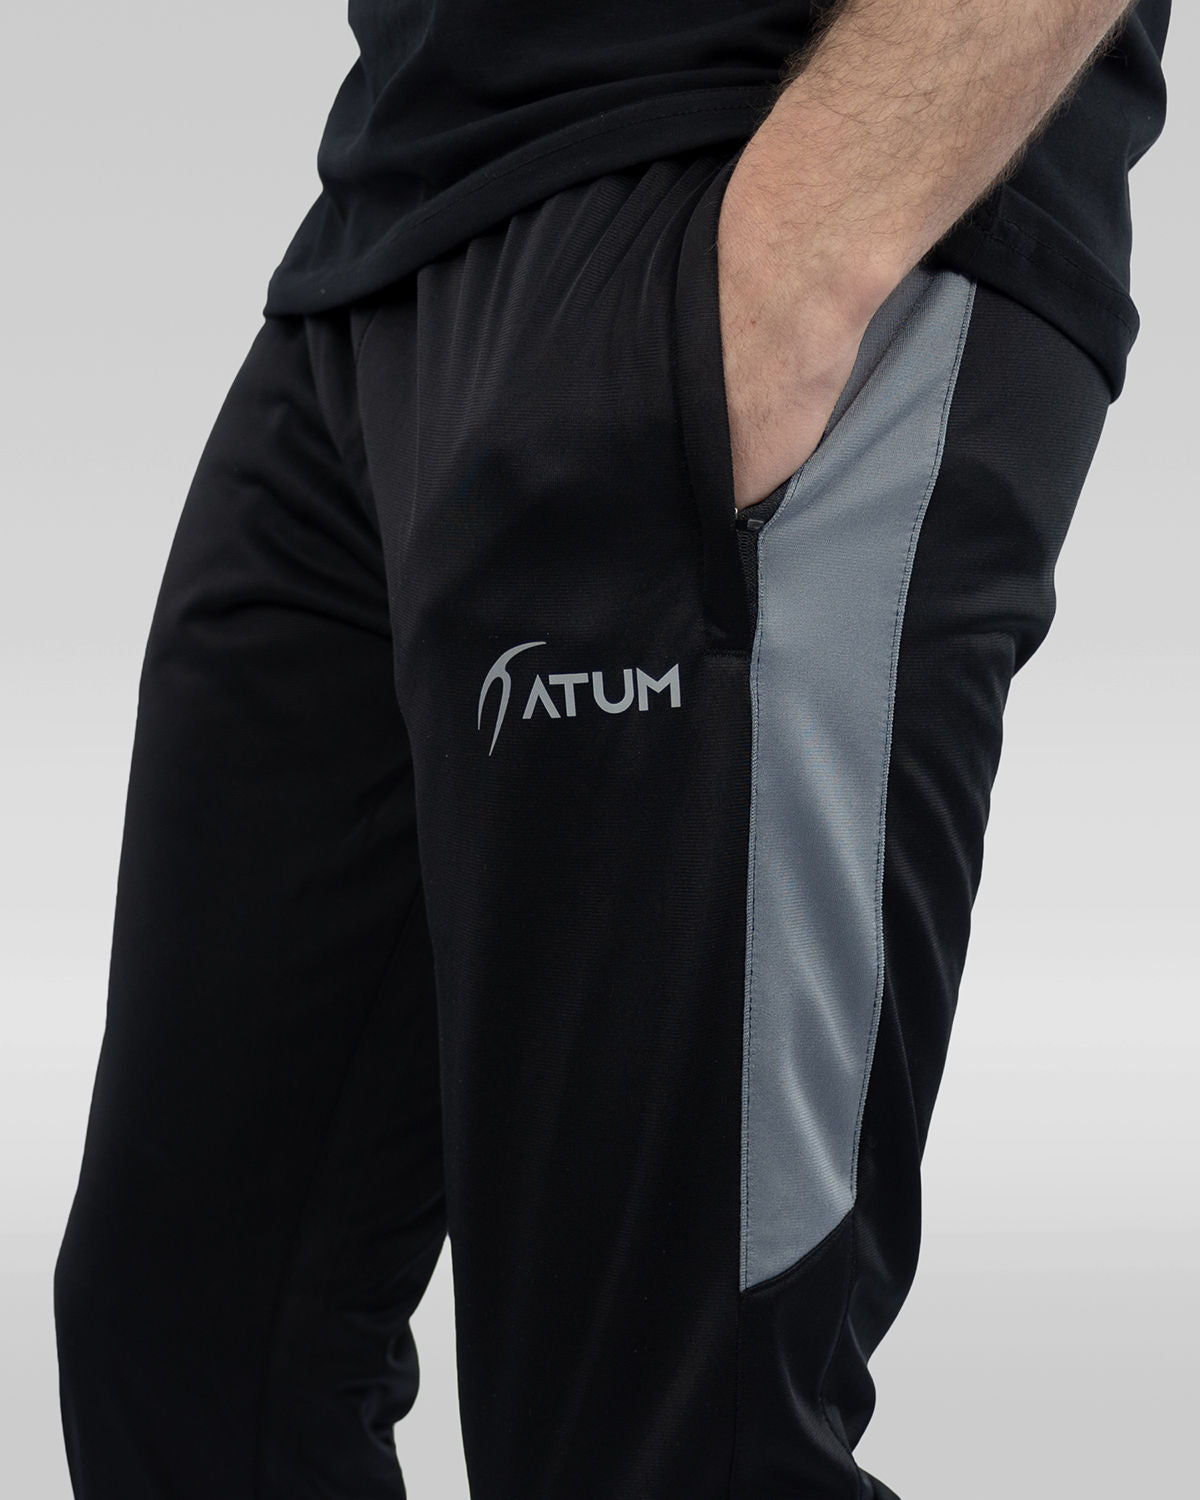 Atum men's dynamic sweatpants